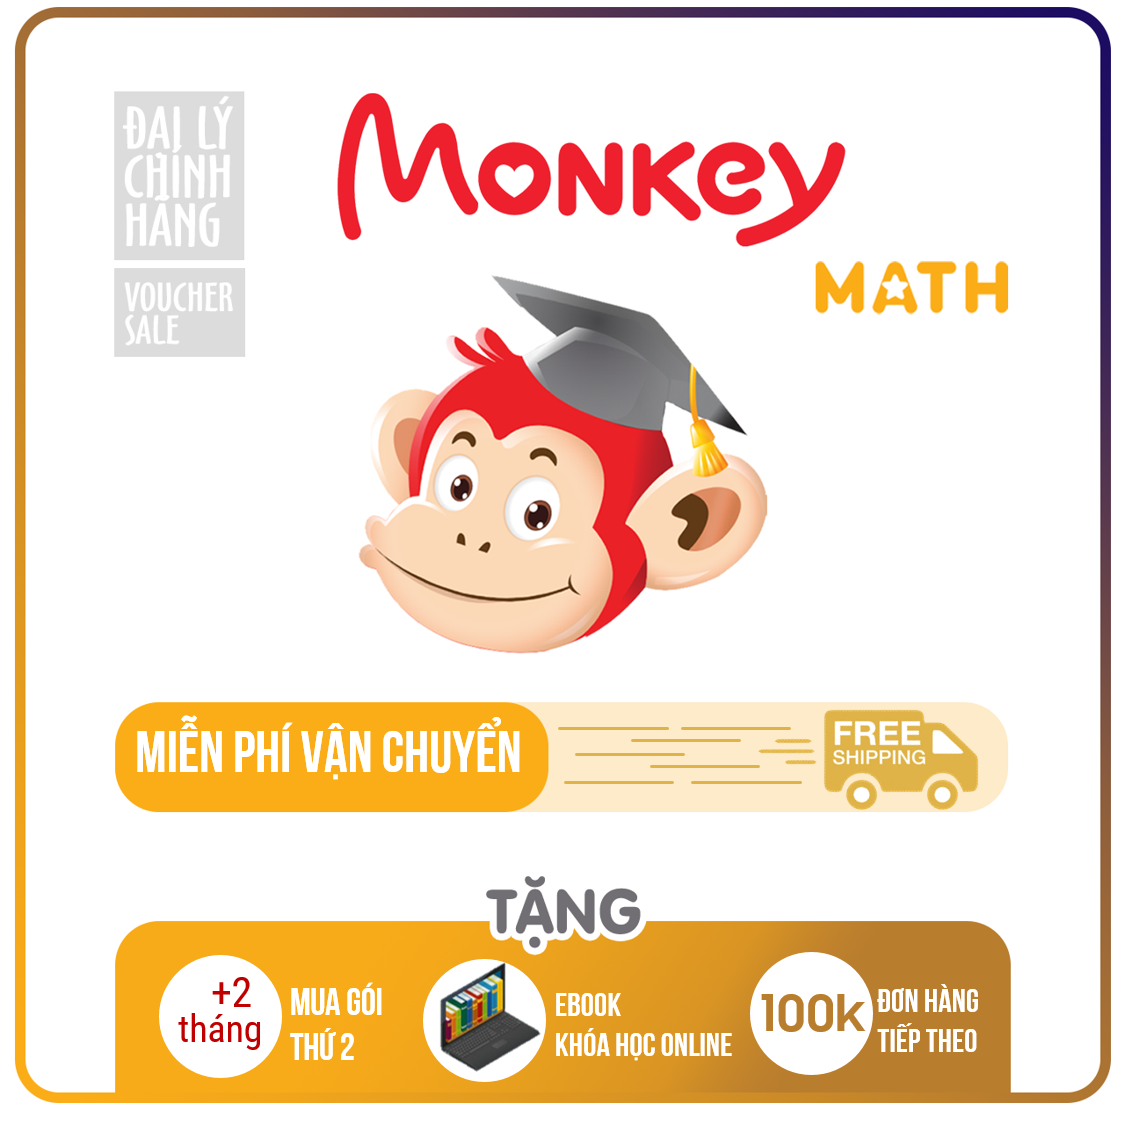 Monkey Math (Trọn đời, 1 năm, 6 tháng) – Toán tiếng Anh chuẩn Mỹ cho trẻ